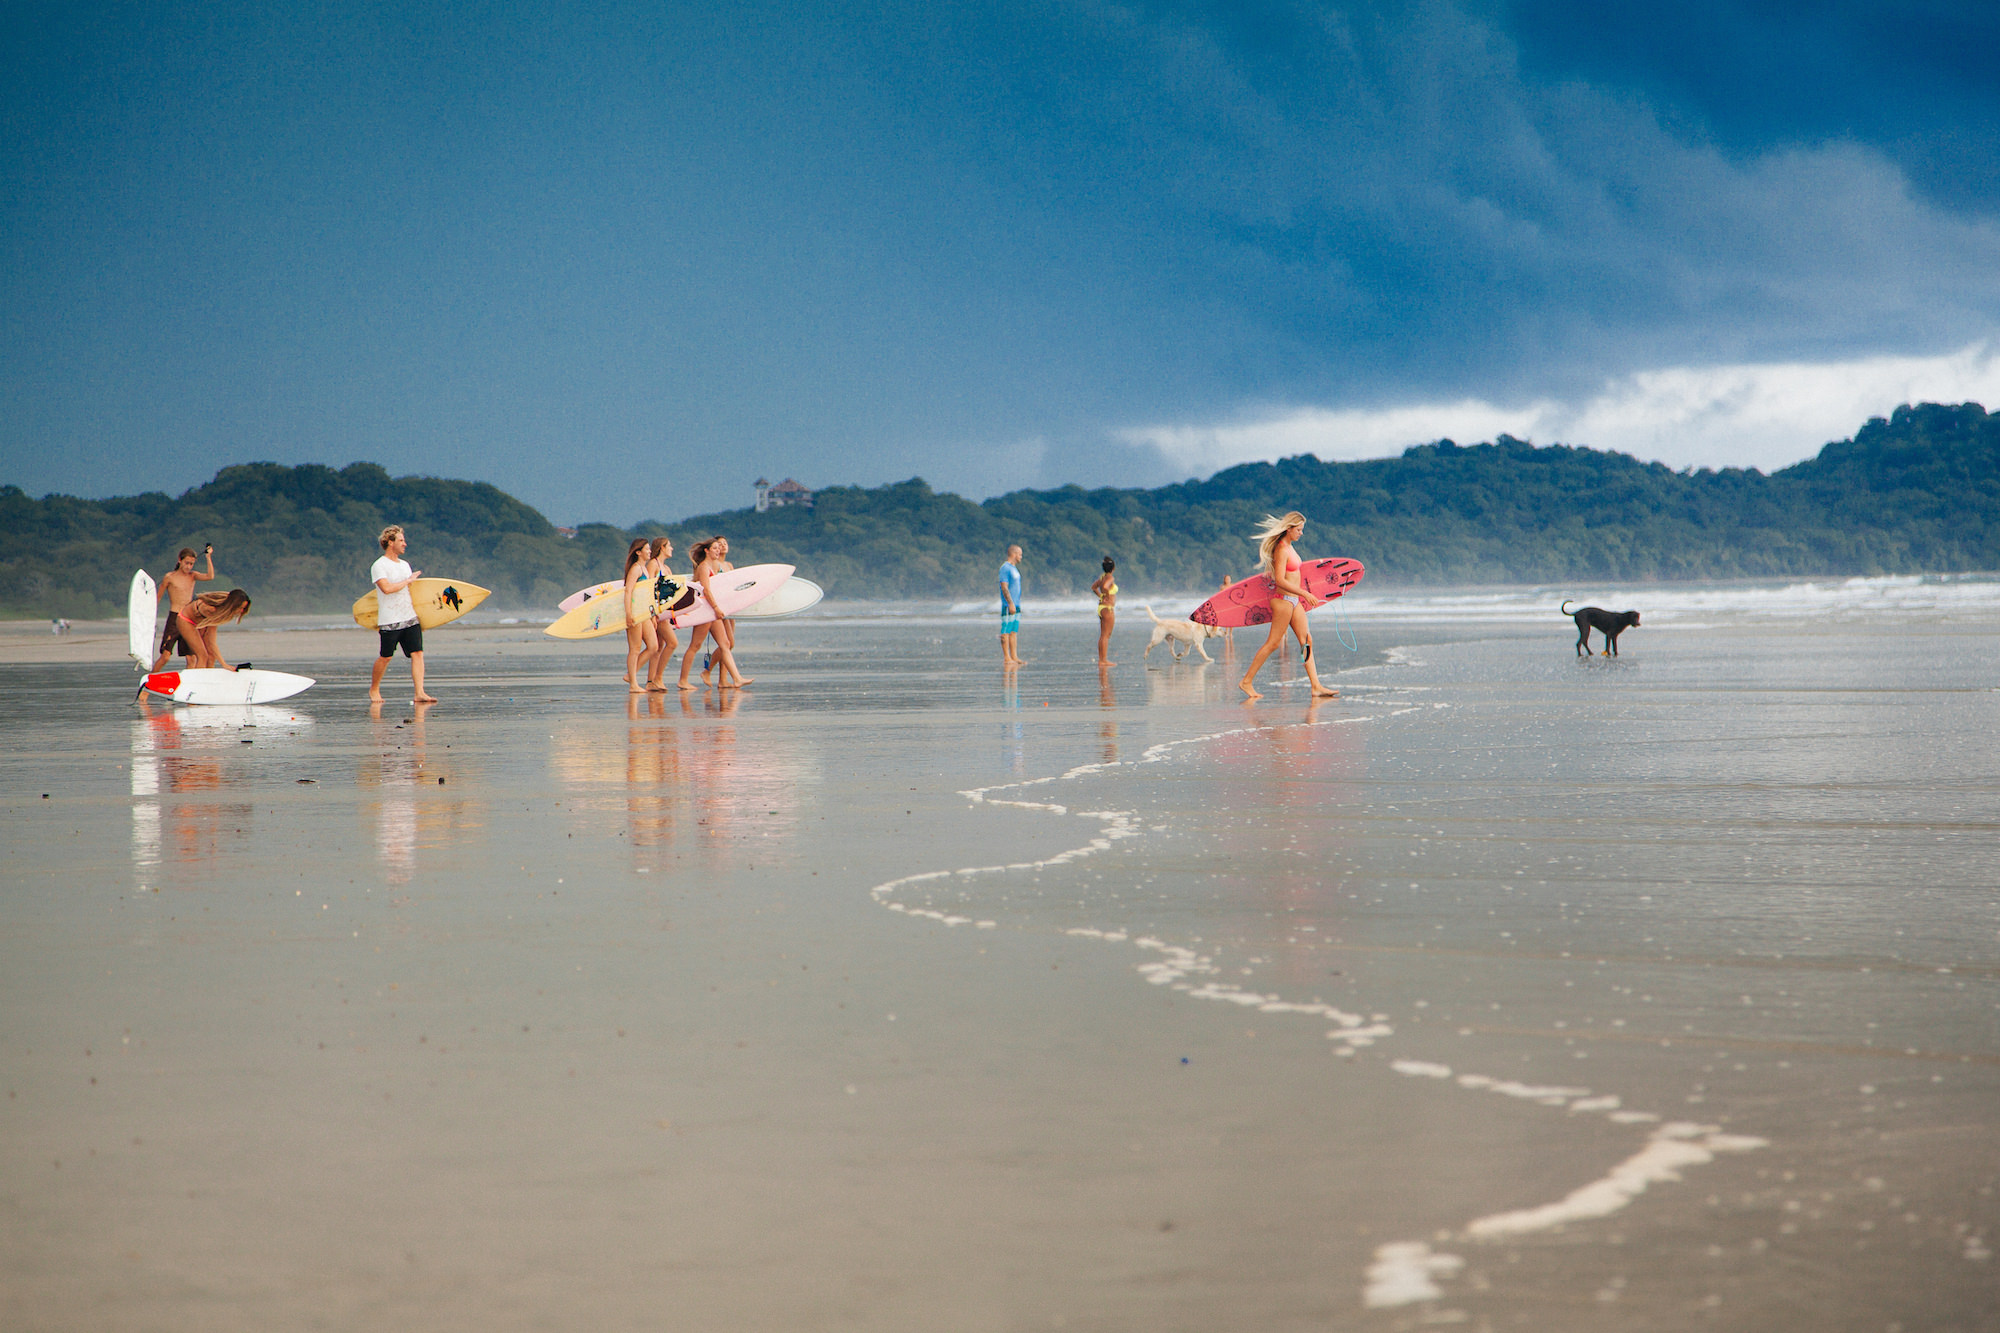 Playa Guiones Surfers, Nosara, Costa Rica